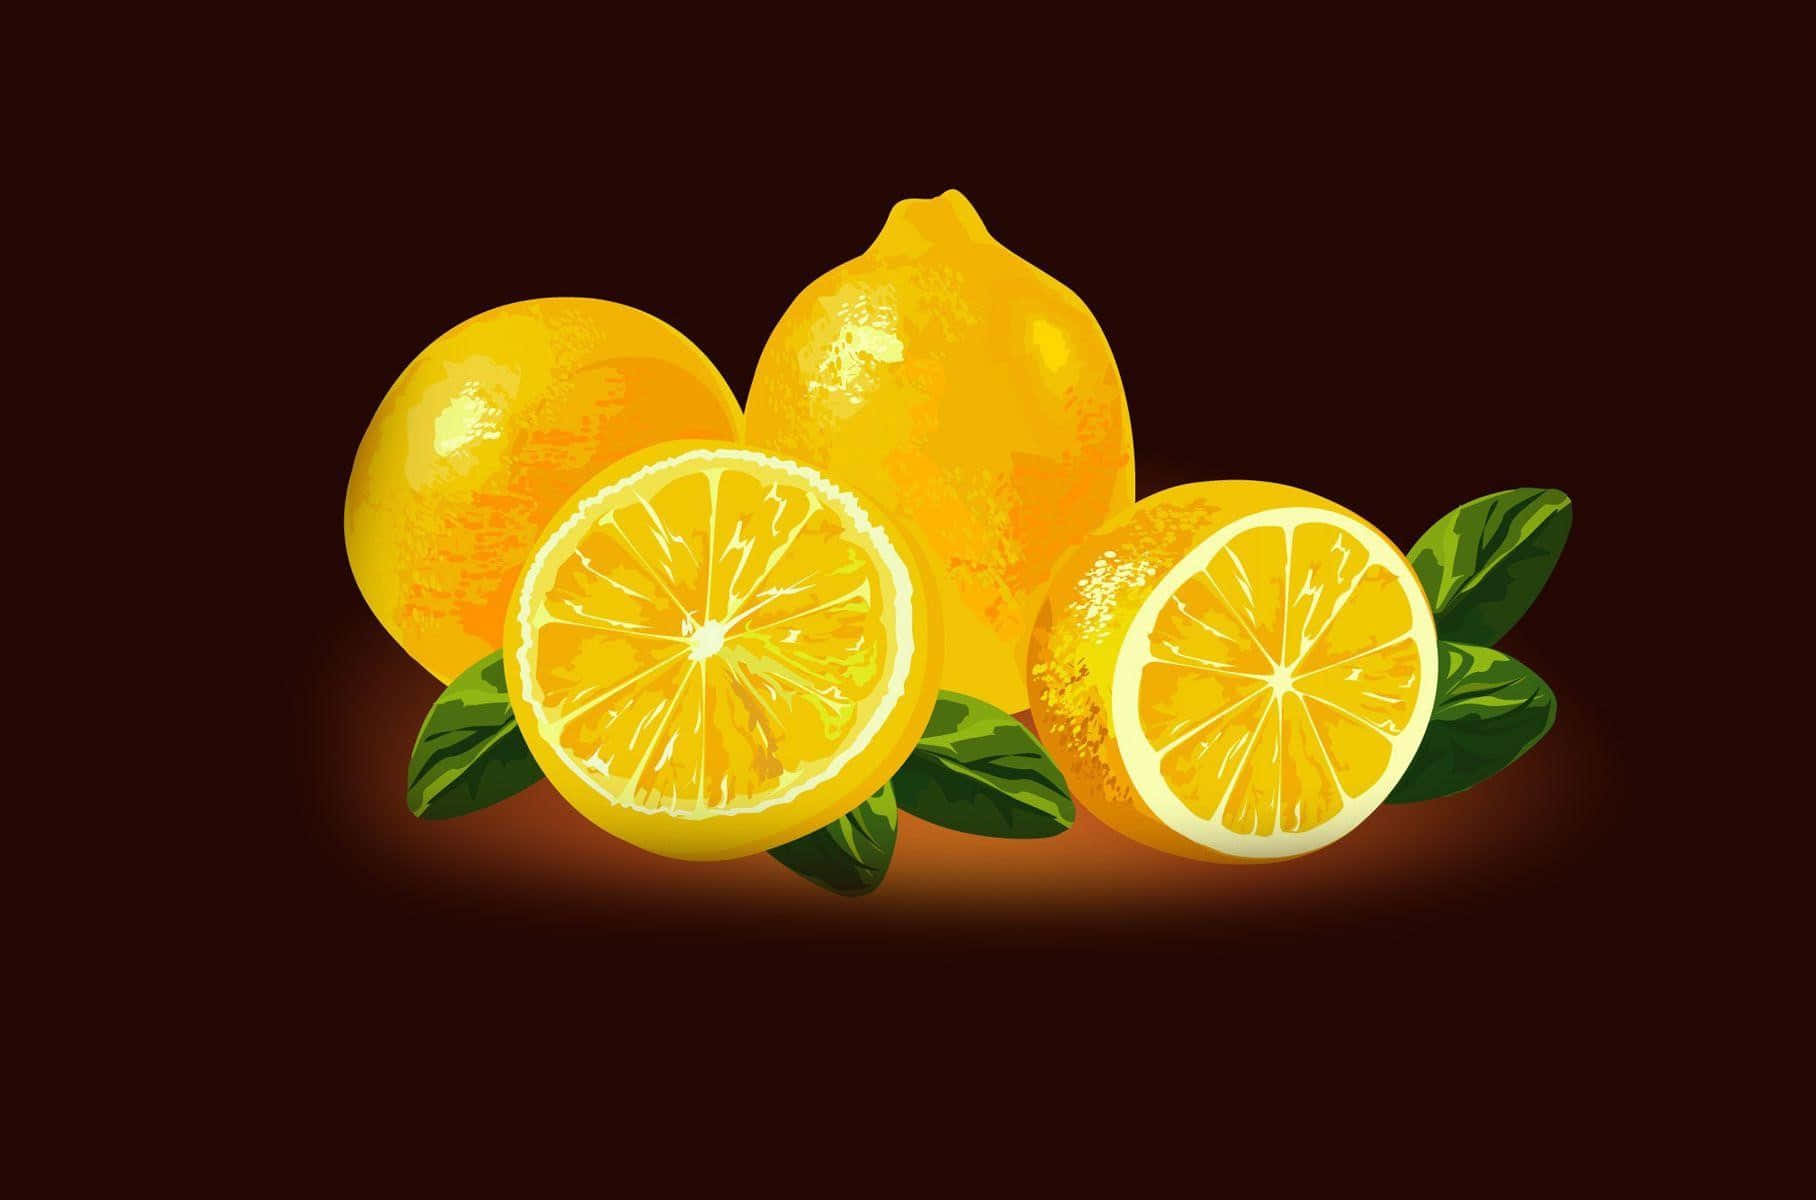 Refrescantementedelicioso: Um Limão